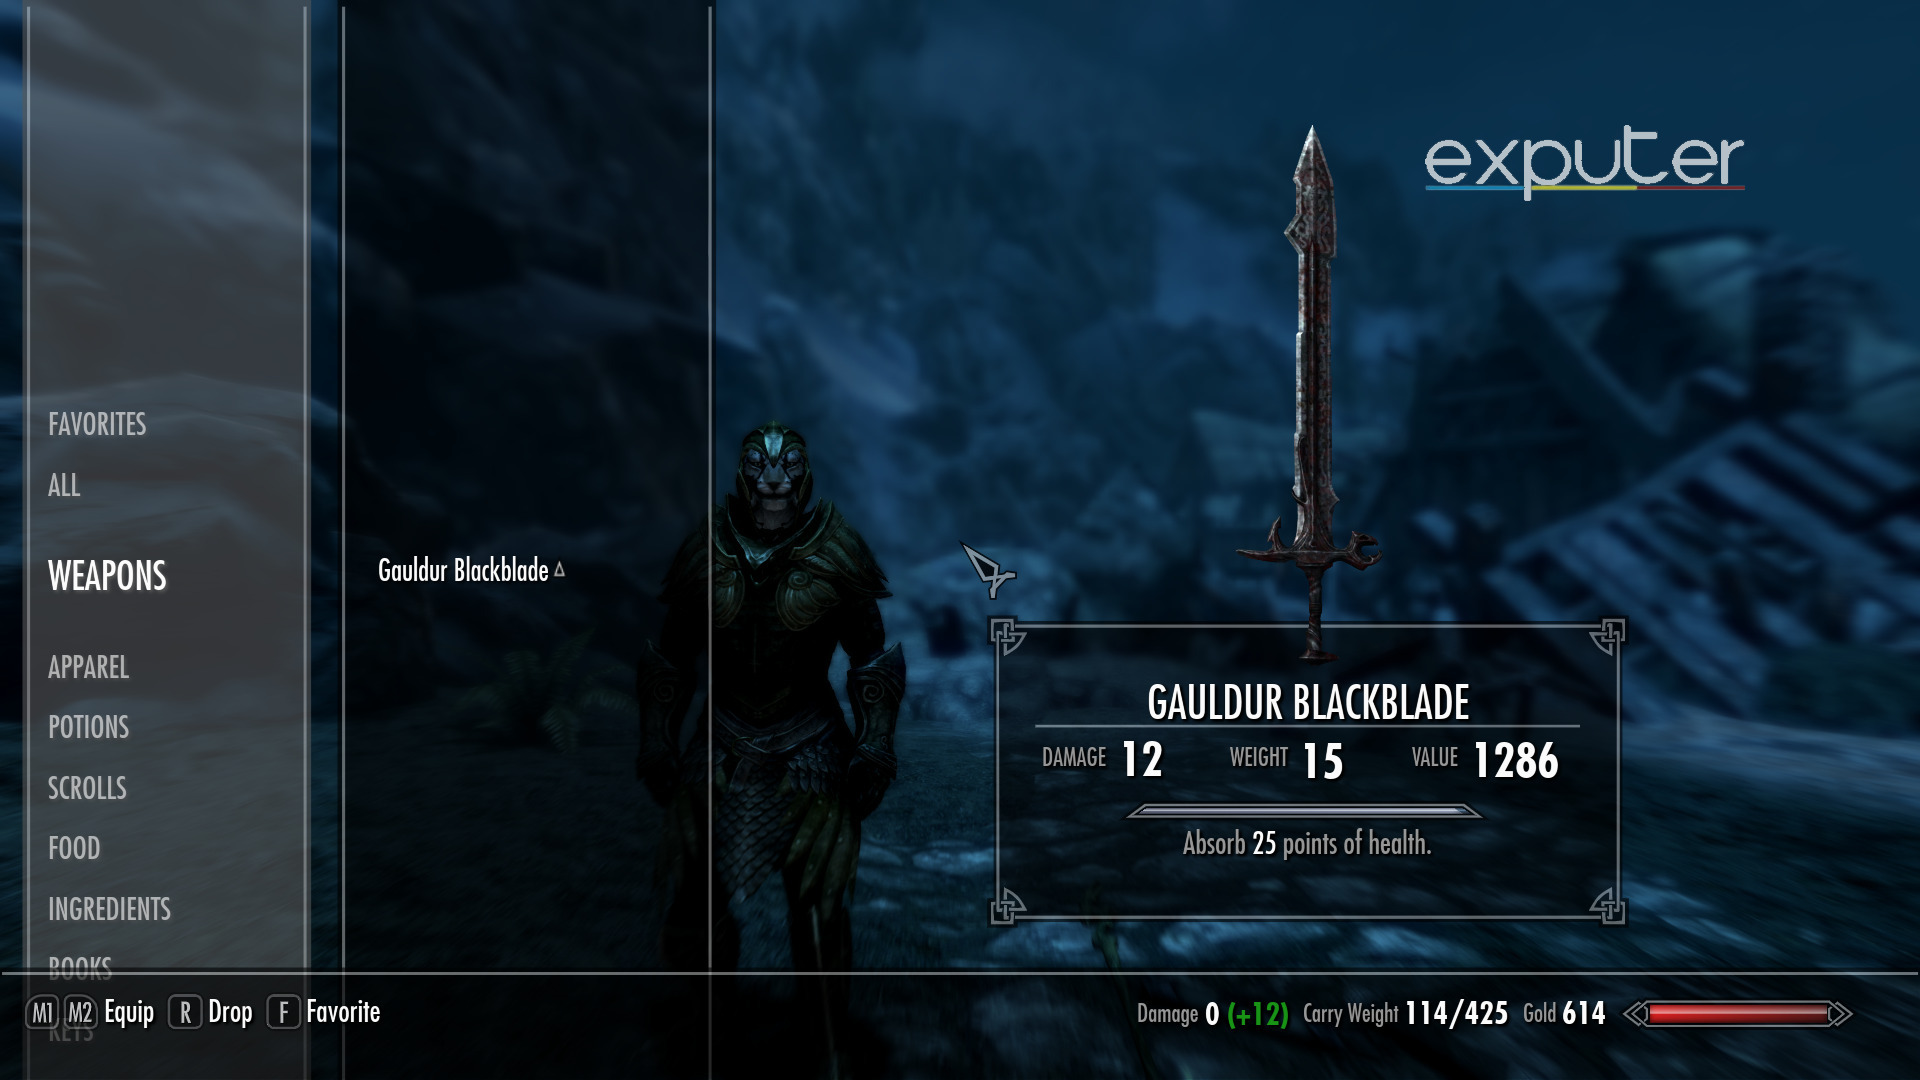 The Gauldur Blackblade.